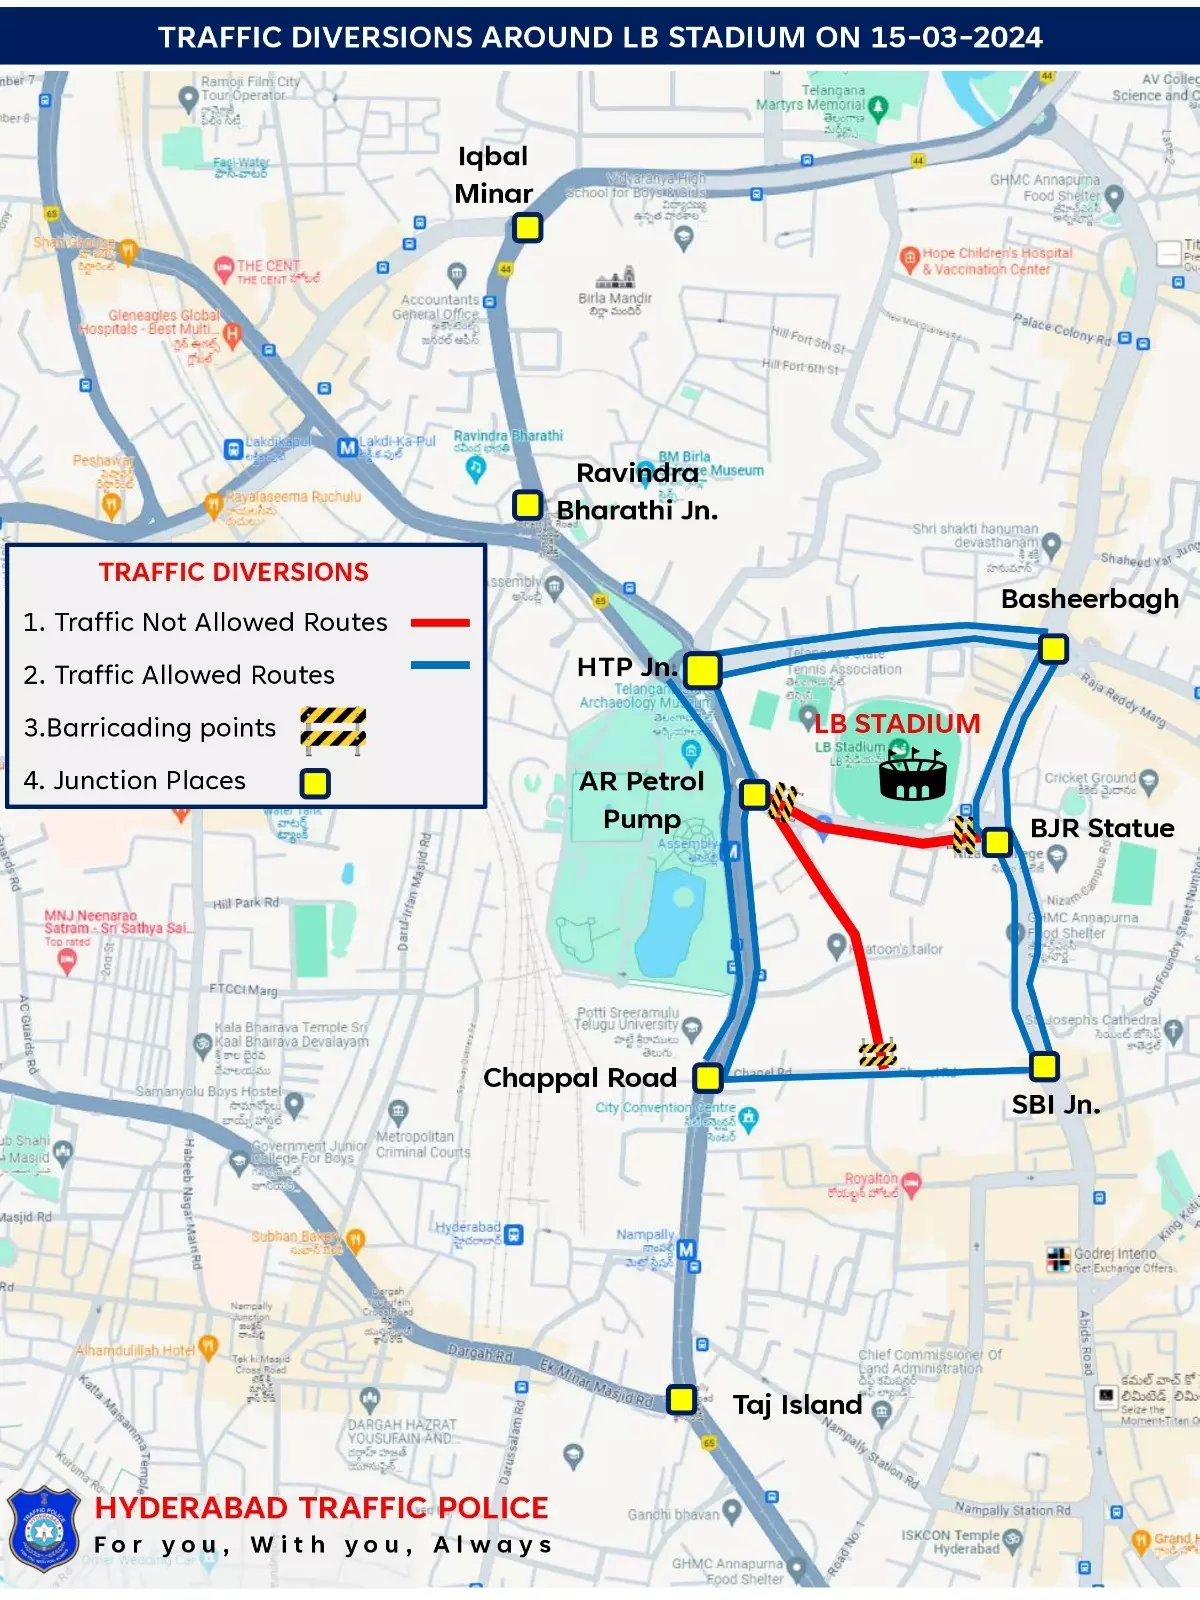 Traffic Curbs for Telangana CM’s Iftar at LB Stadium